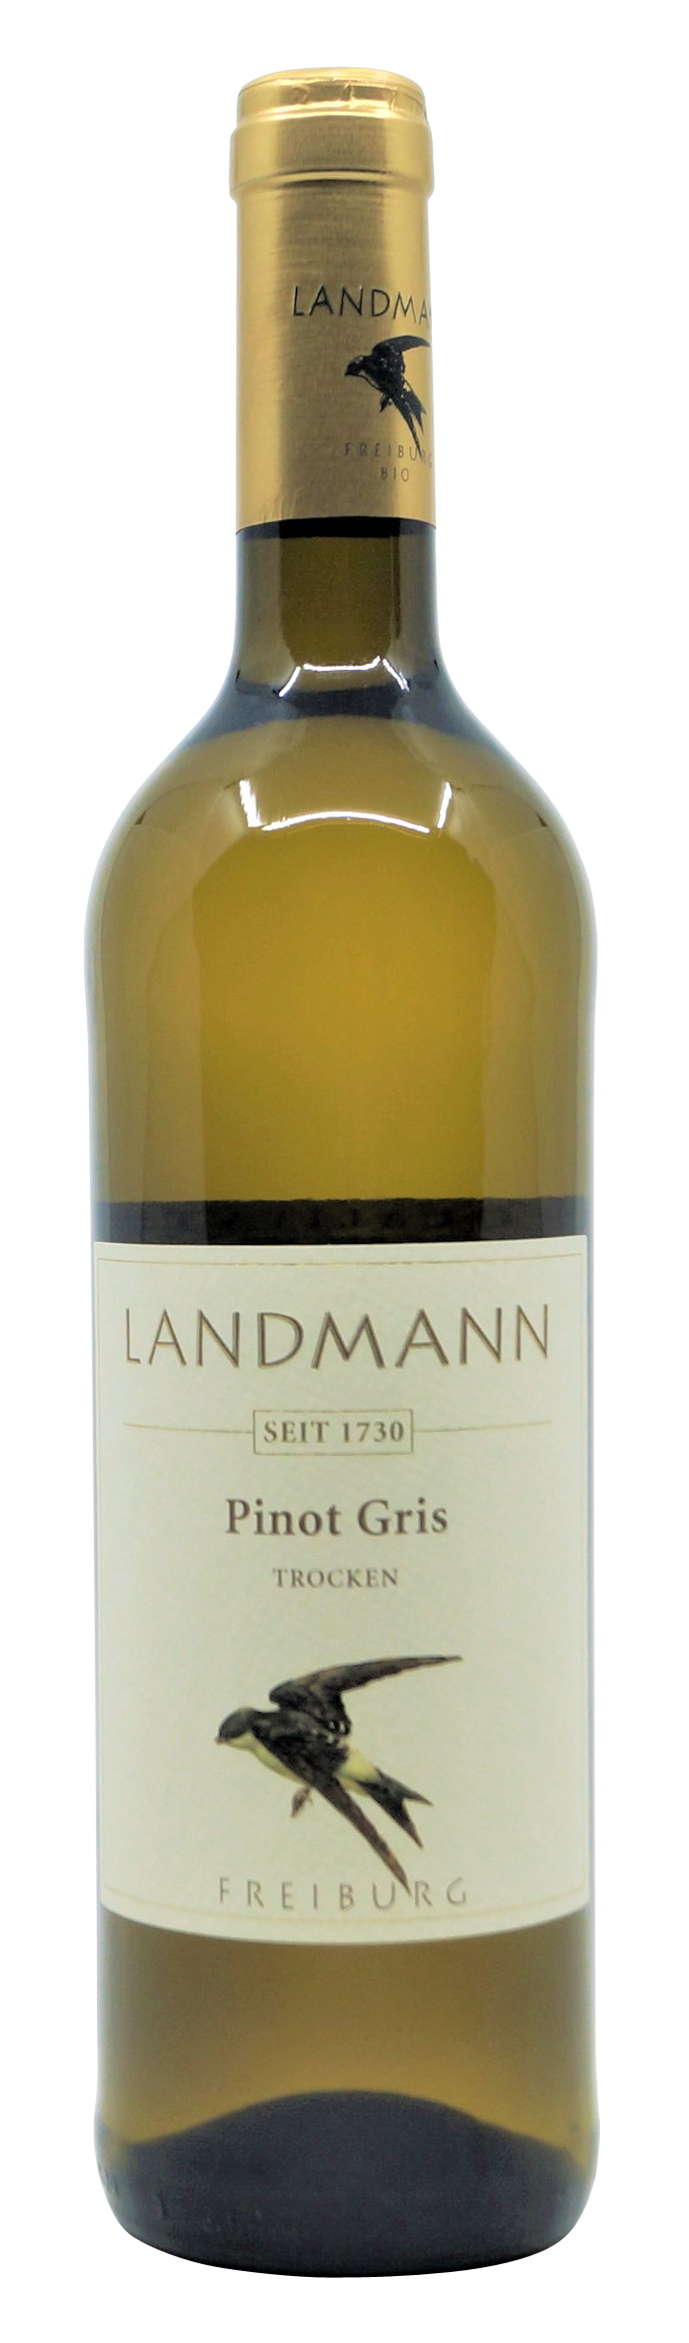 2020 Pinot Gris trocken vom Weingut Landmann aus Waltershofen 0,75 l Flasche ( 14,40 €/ Liter)